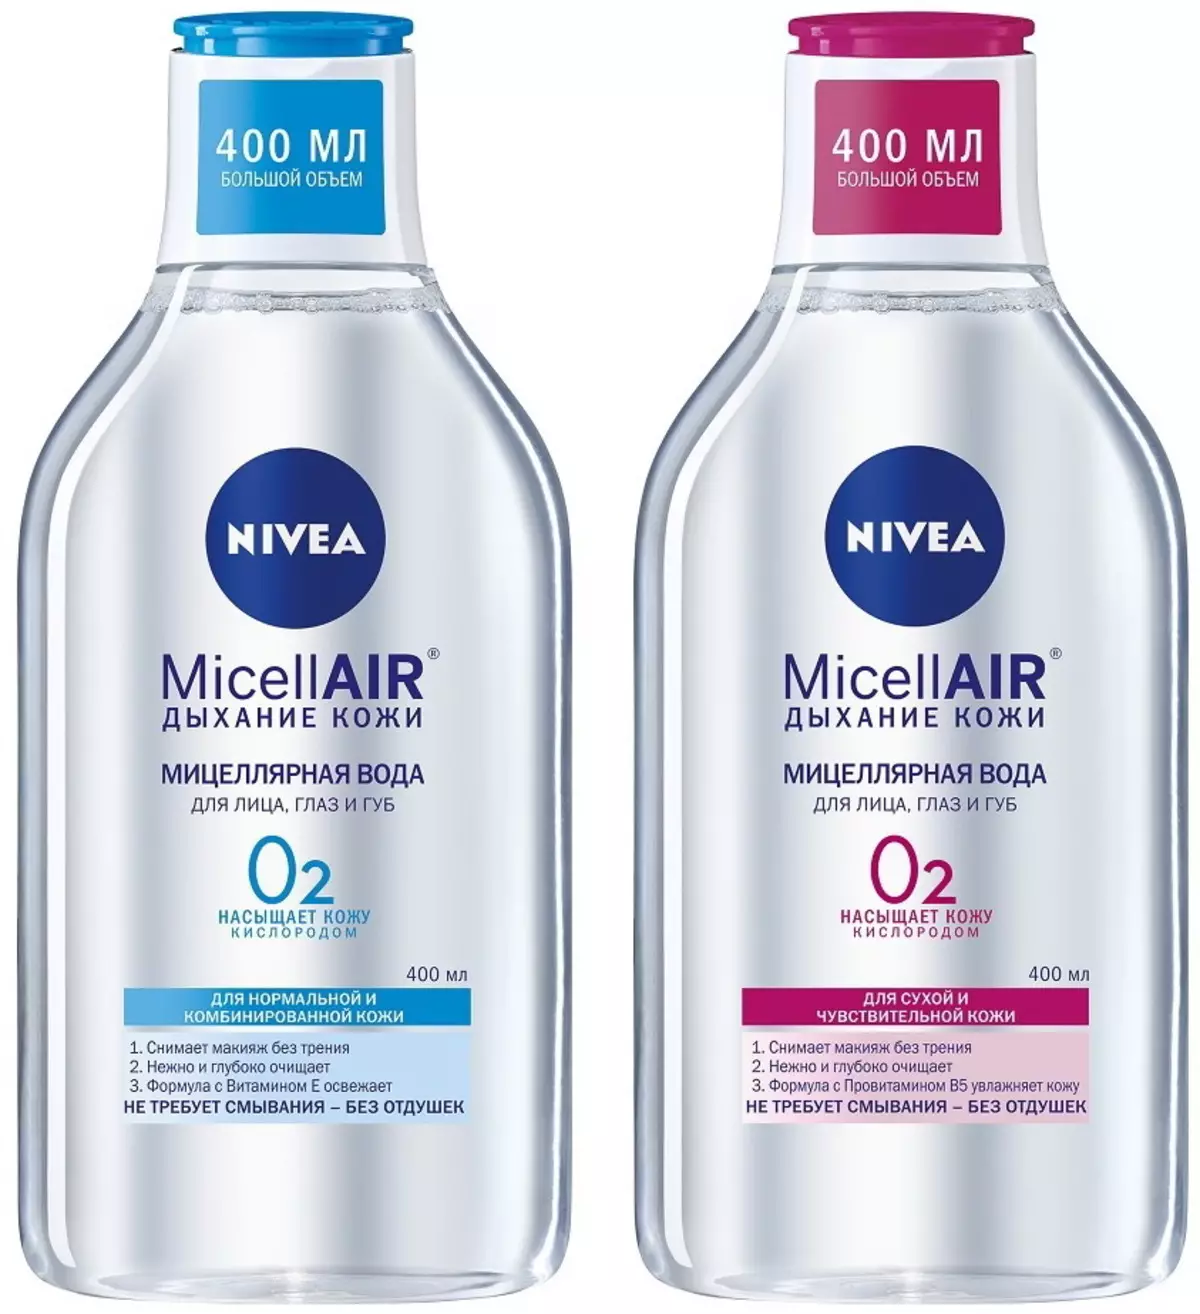 အကောင်းဆုံး Micellar ရေကဘာလဲ။ ပြန်လည်သုံးသပ်ခြင်းများအတွက်ဘတ်ဂျက်မိုင်ရုဗင်ရေ၏ထိပ်တန်းမိတ်ကပ်နှင့်အဝတ်လျှော်ခြင်းအတွက်အဆင့်သတ်မှတ်ချက်ကိုဆိုလိုသည် 23918_6